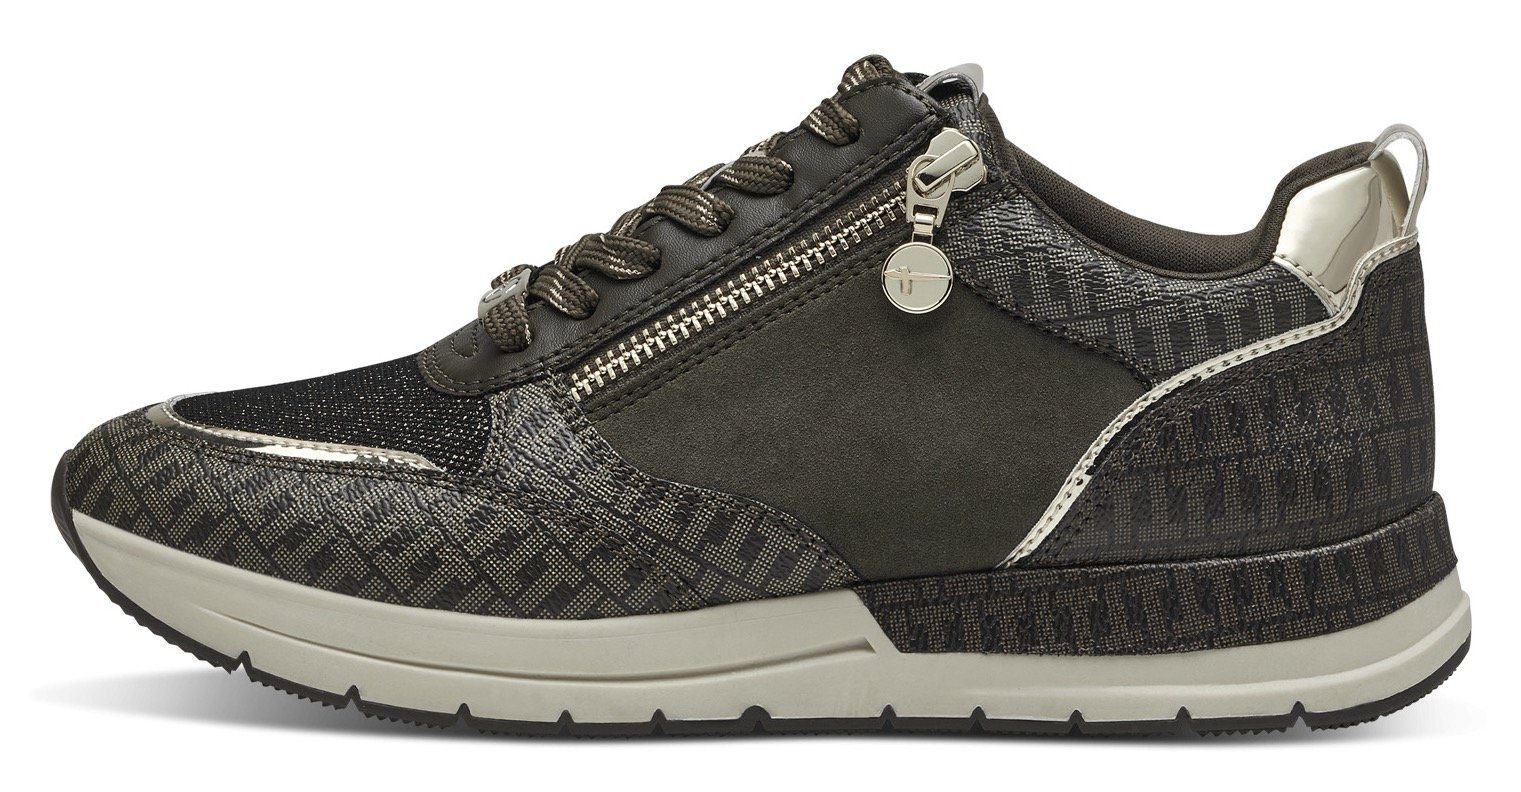 Tamaris Sneaker mit trendigen Metallic-Details kombiniert olivgrün